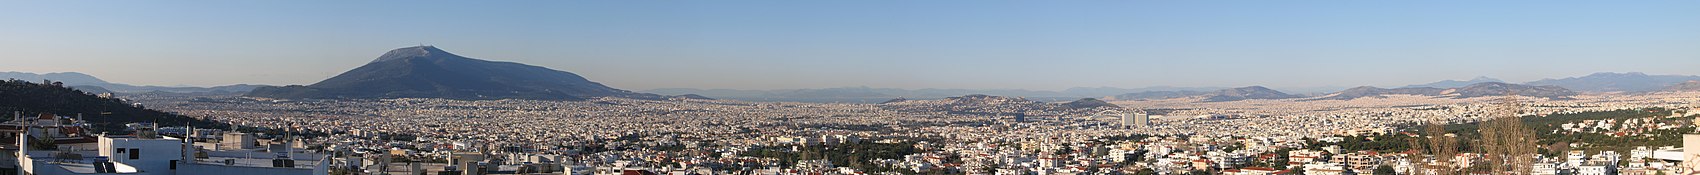 Panorama północno-zachodnich dzielnic Aten z dzielnicy Melissia